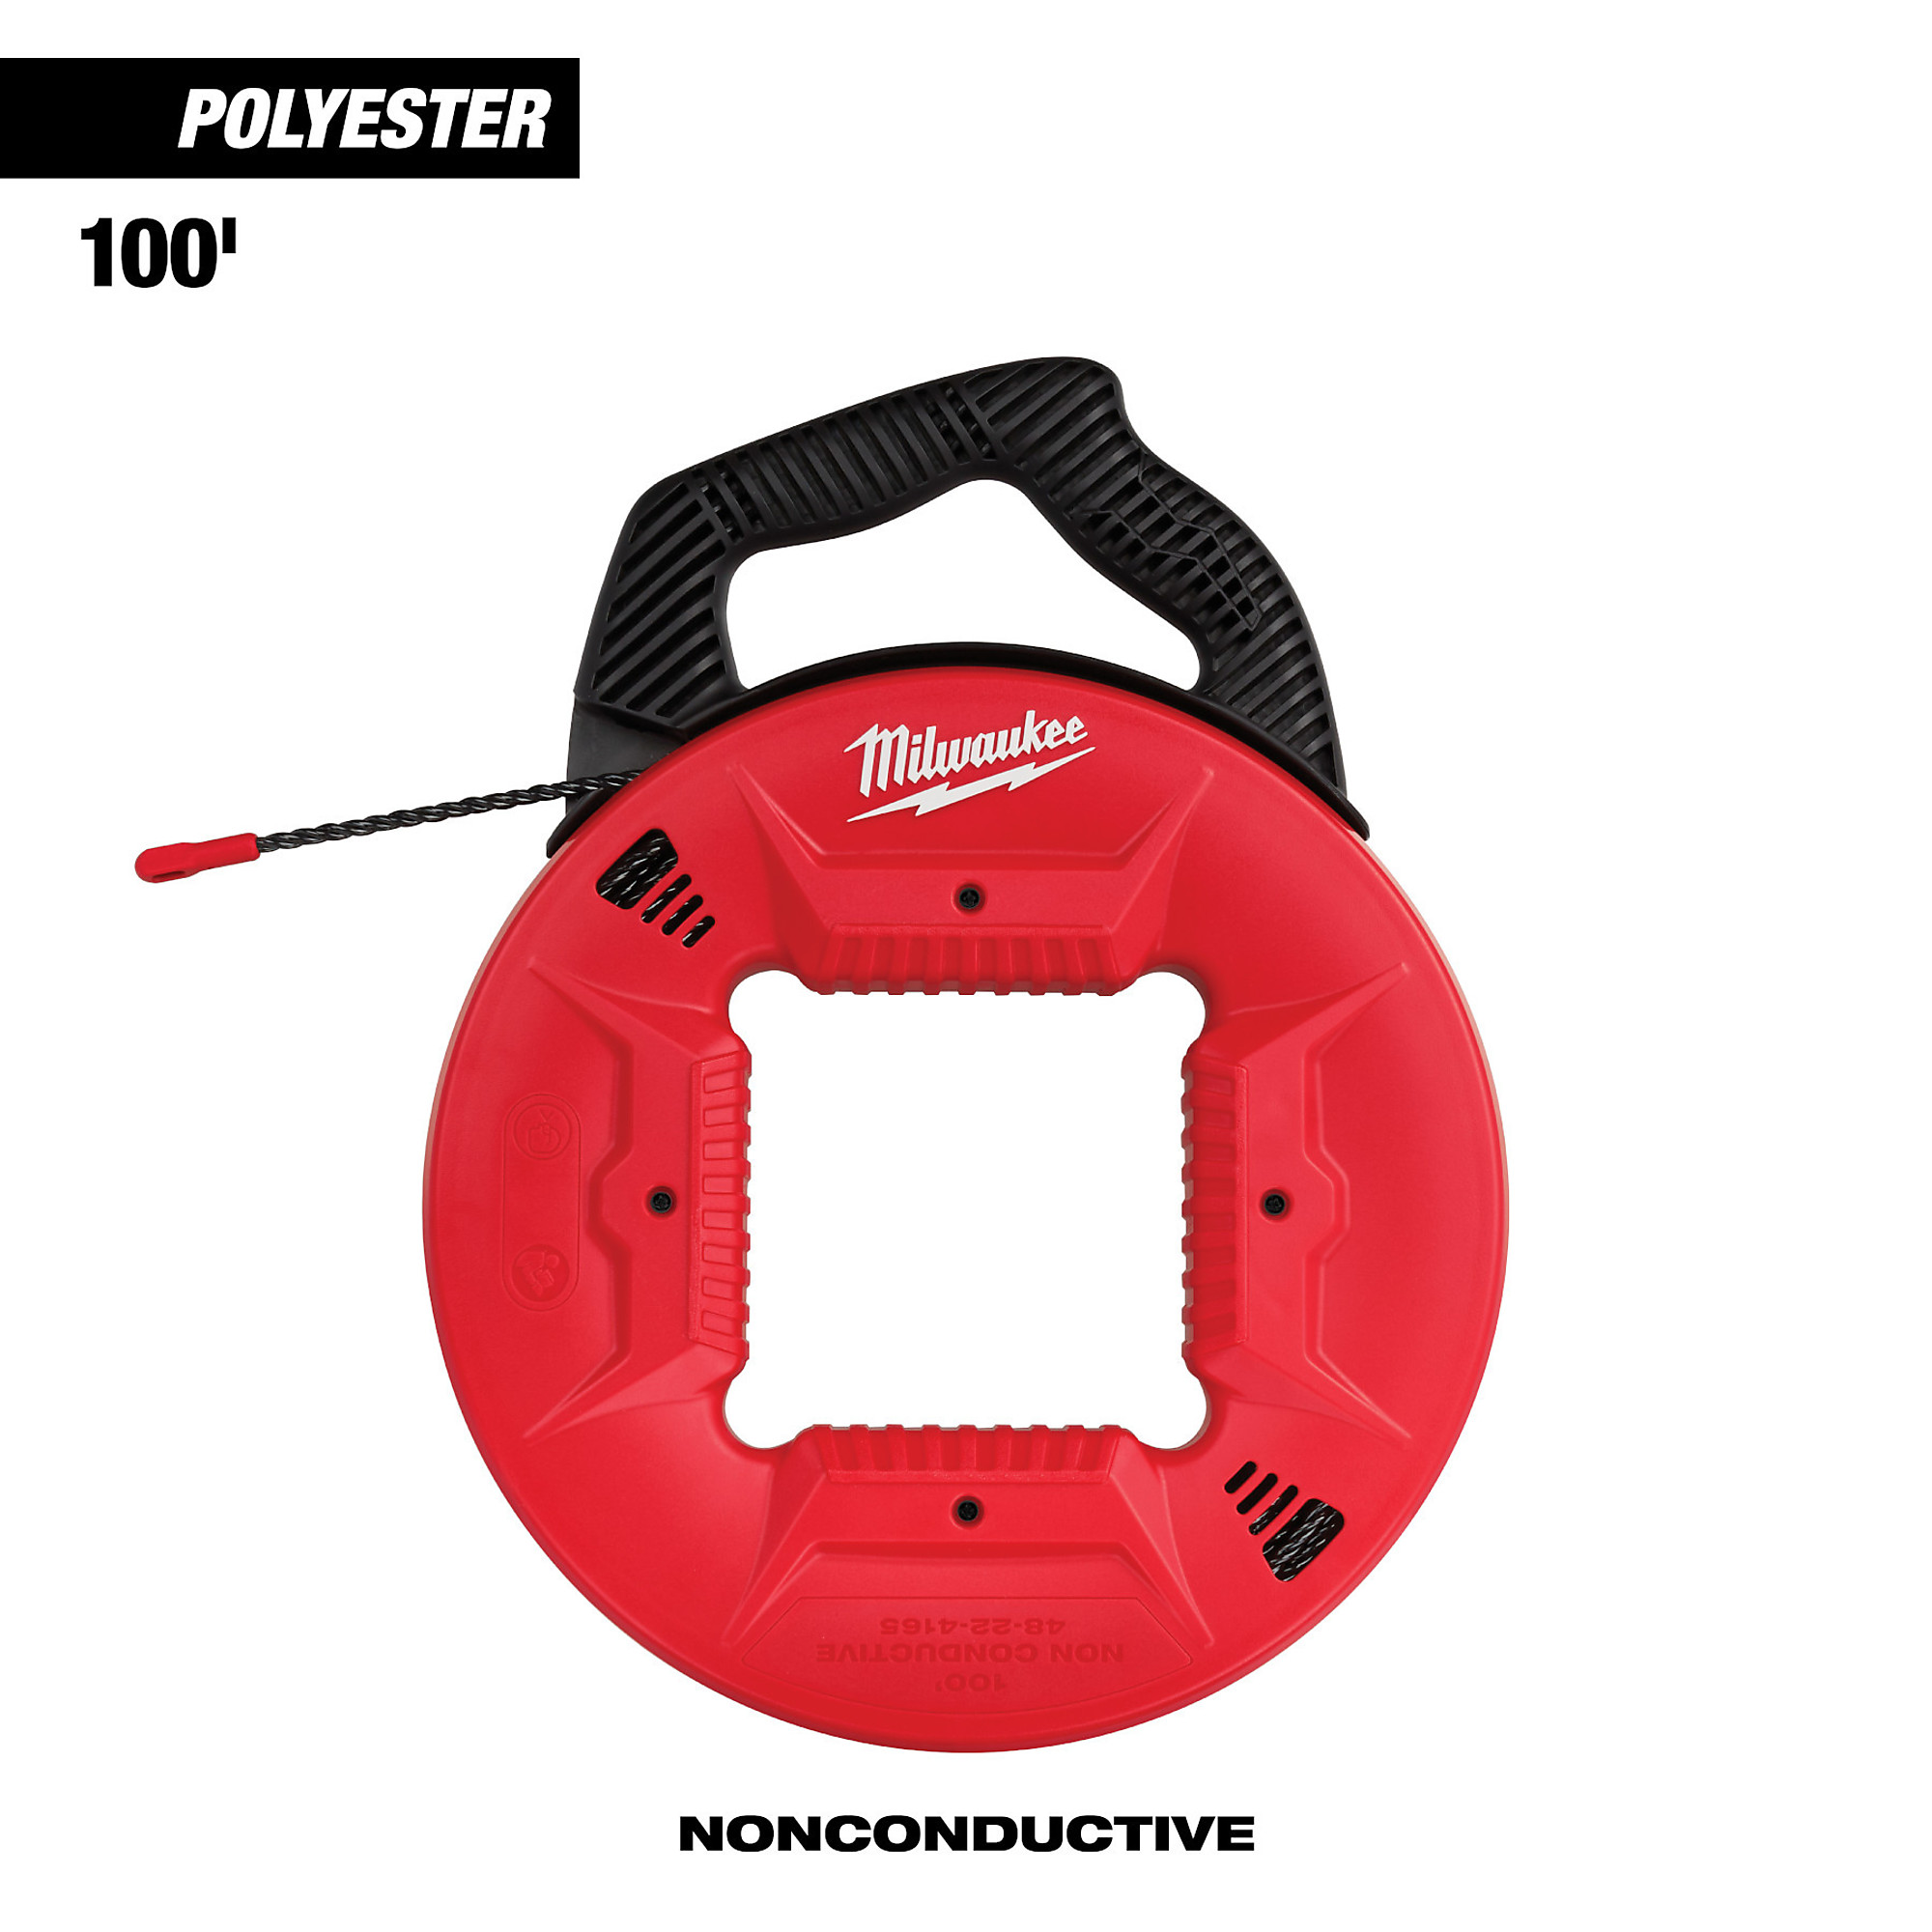 Milwaukee, 100â Polyester Fish Tape with Nonconductive Tip, Tape Length 100 in, Stick (qty.) 1, Model 48-22-4165